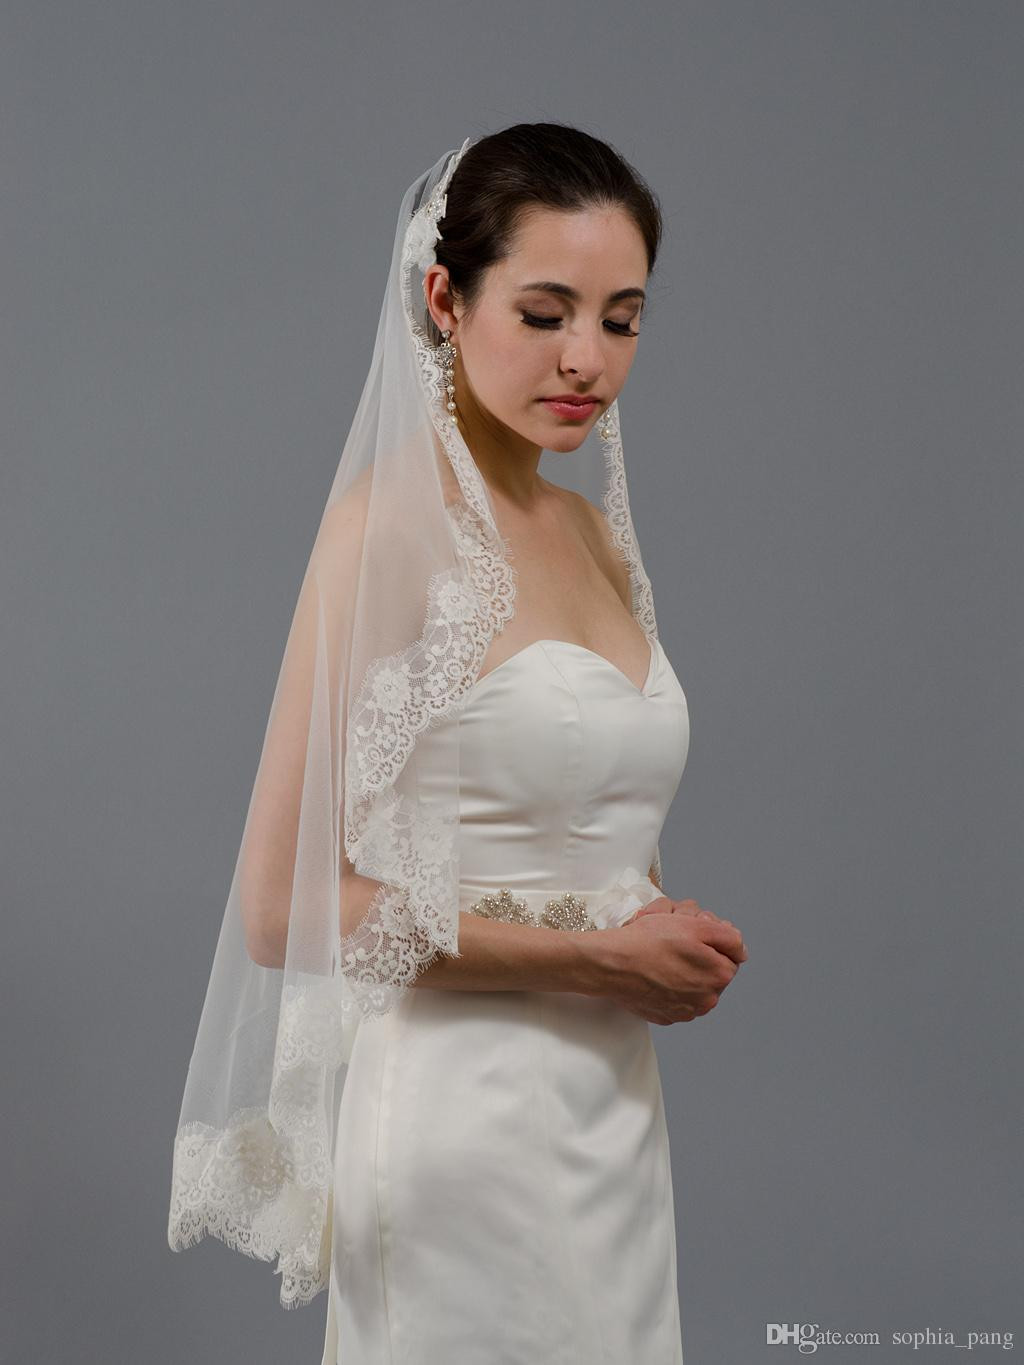 Short Ivory Wedding Veils Uk
 2019 High Quality Short Lace Edge Bridal Wedding Veils e